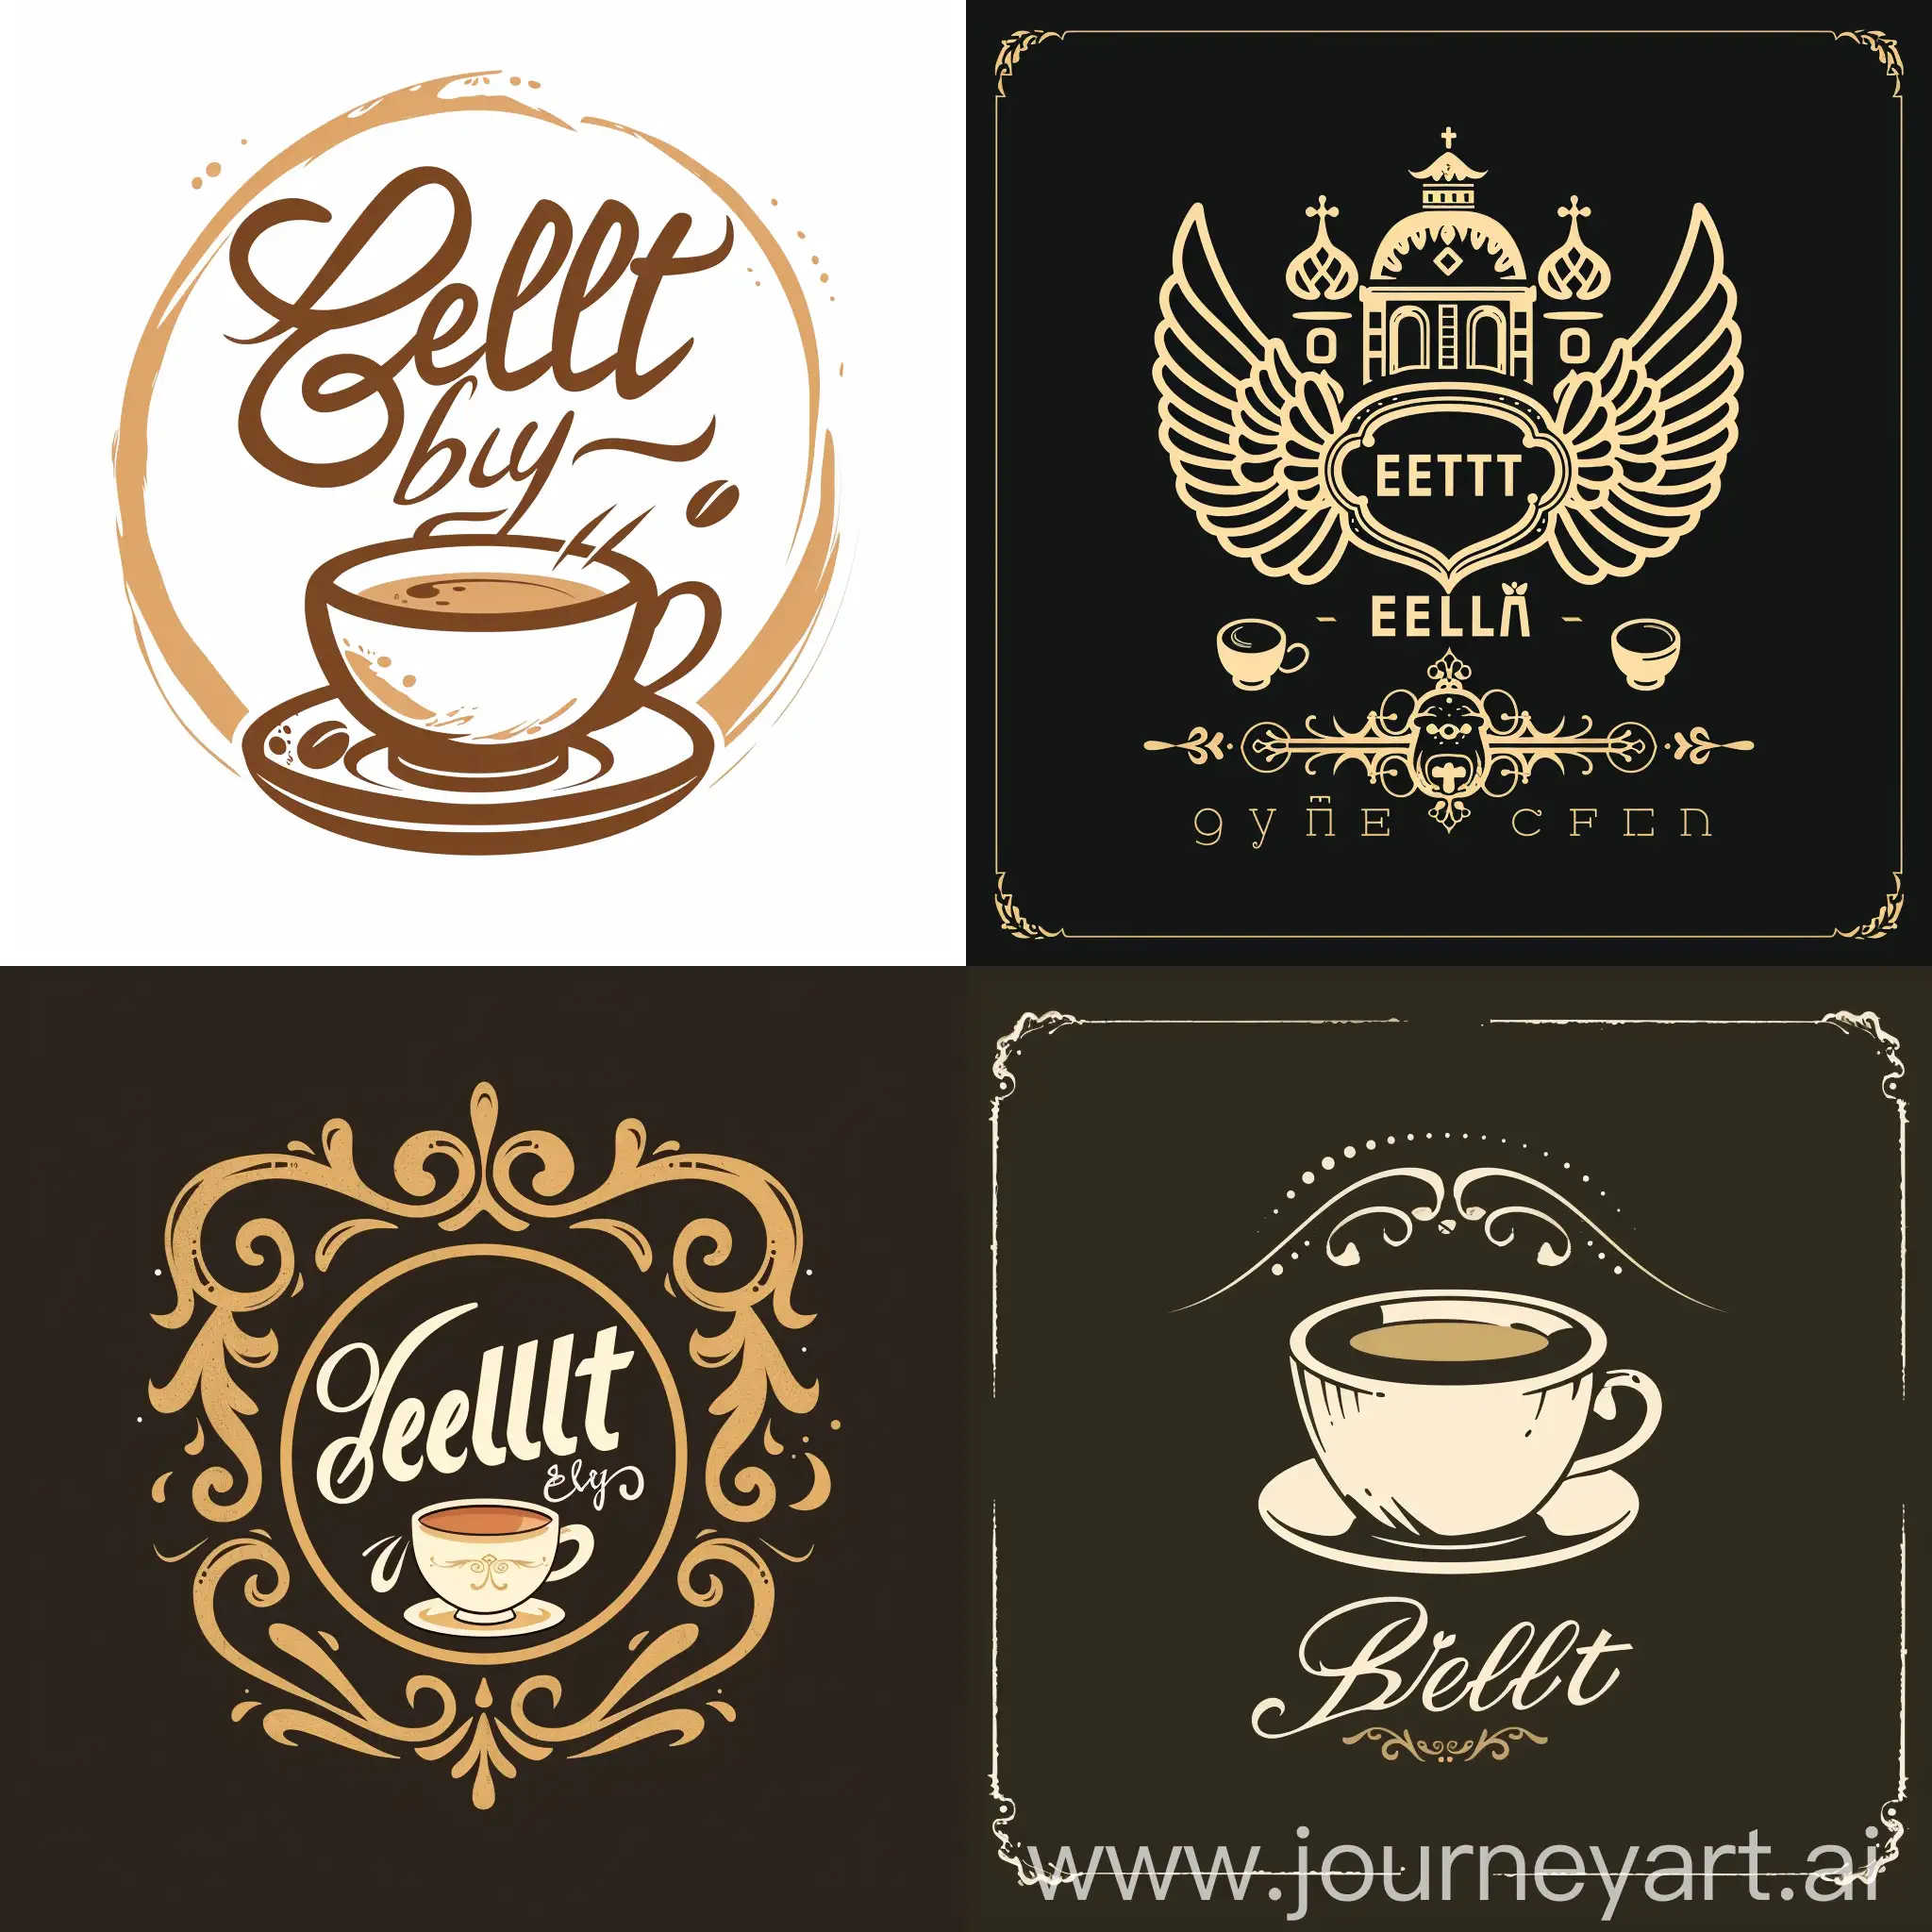 SaintPetersburg-Style-Coffee-Shop-Logo-Design